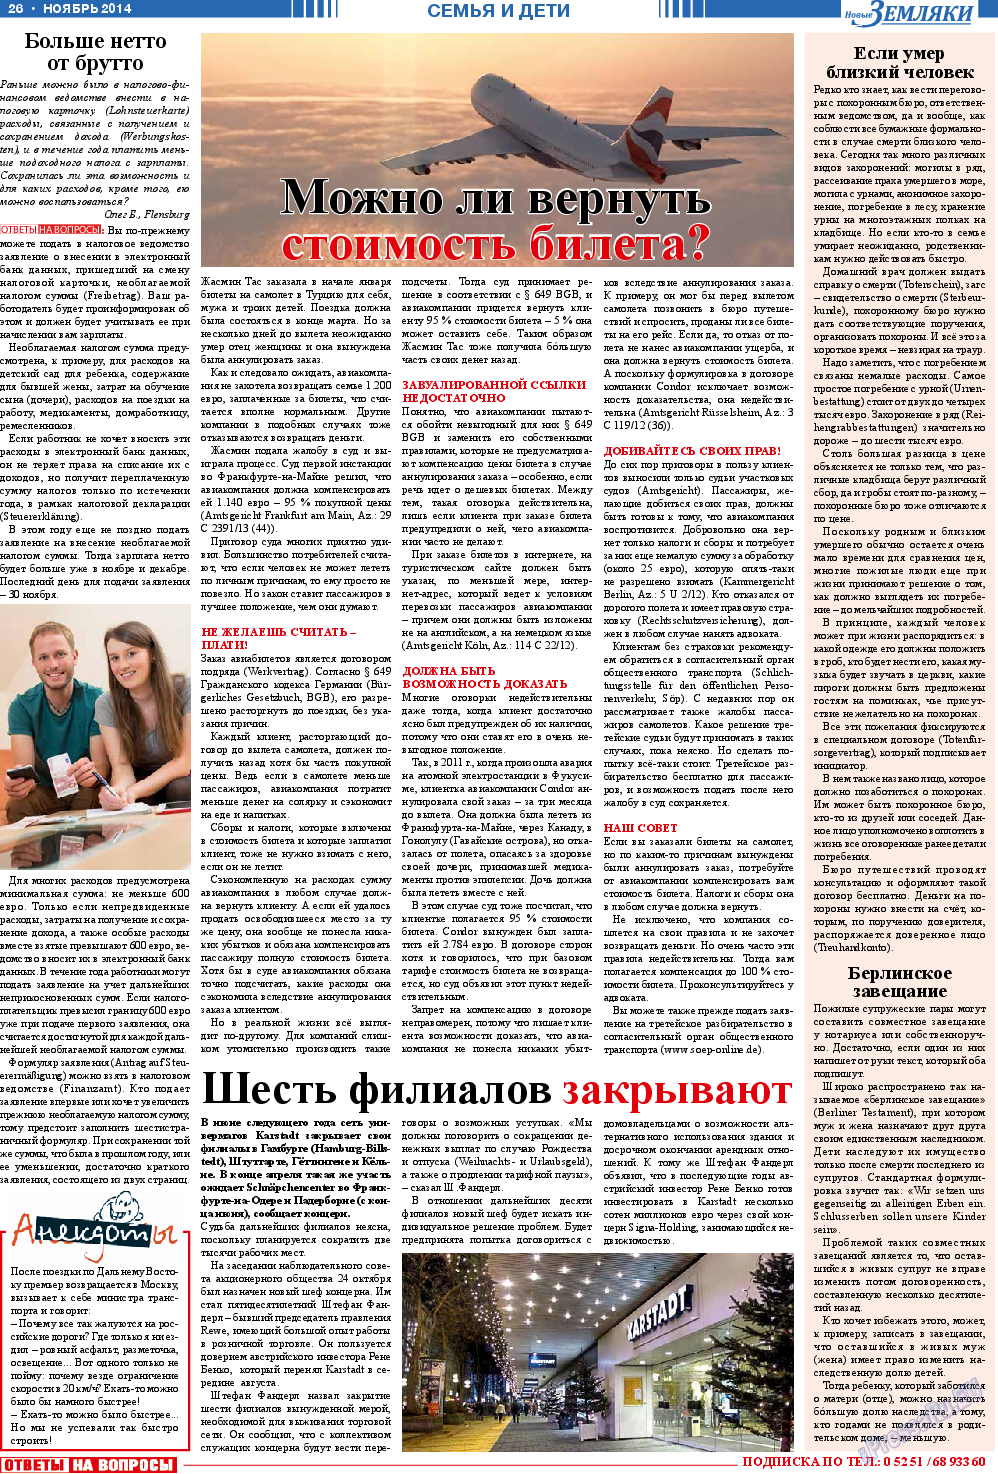 Новые Земляки, газета. 2014 №11 стр.26